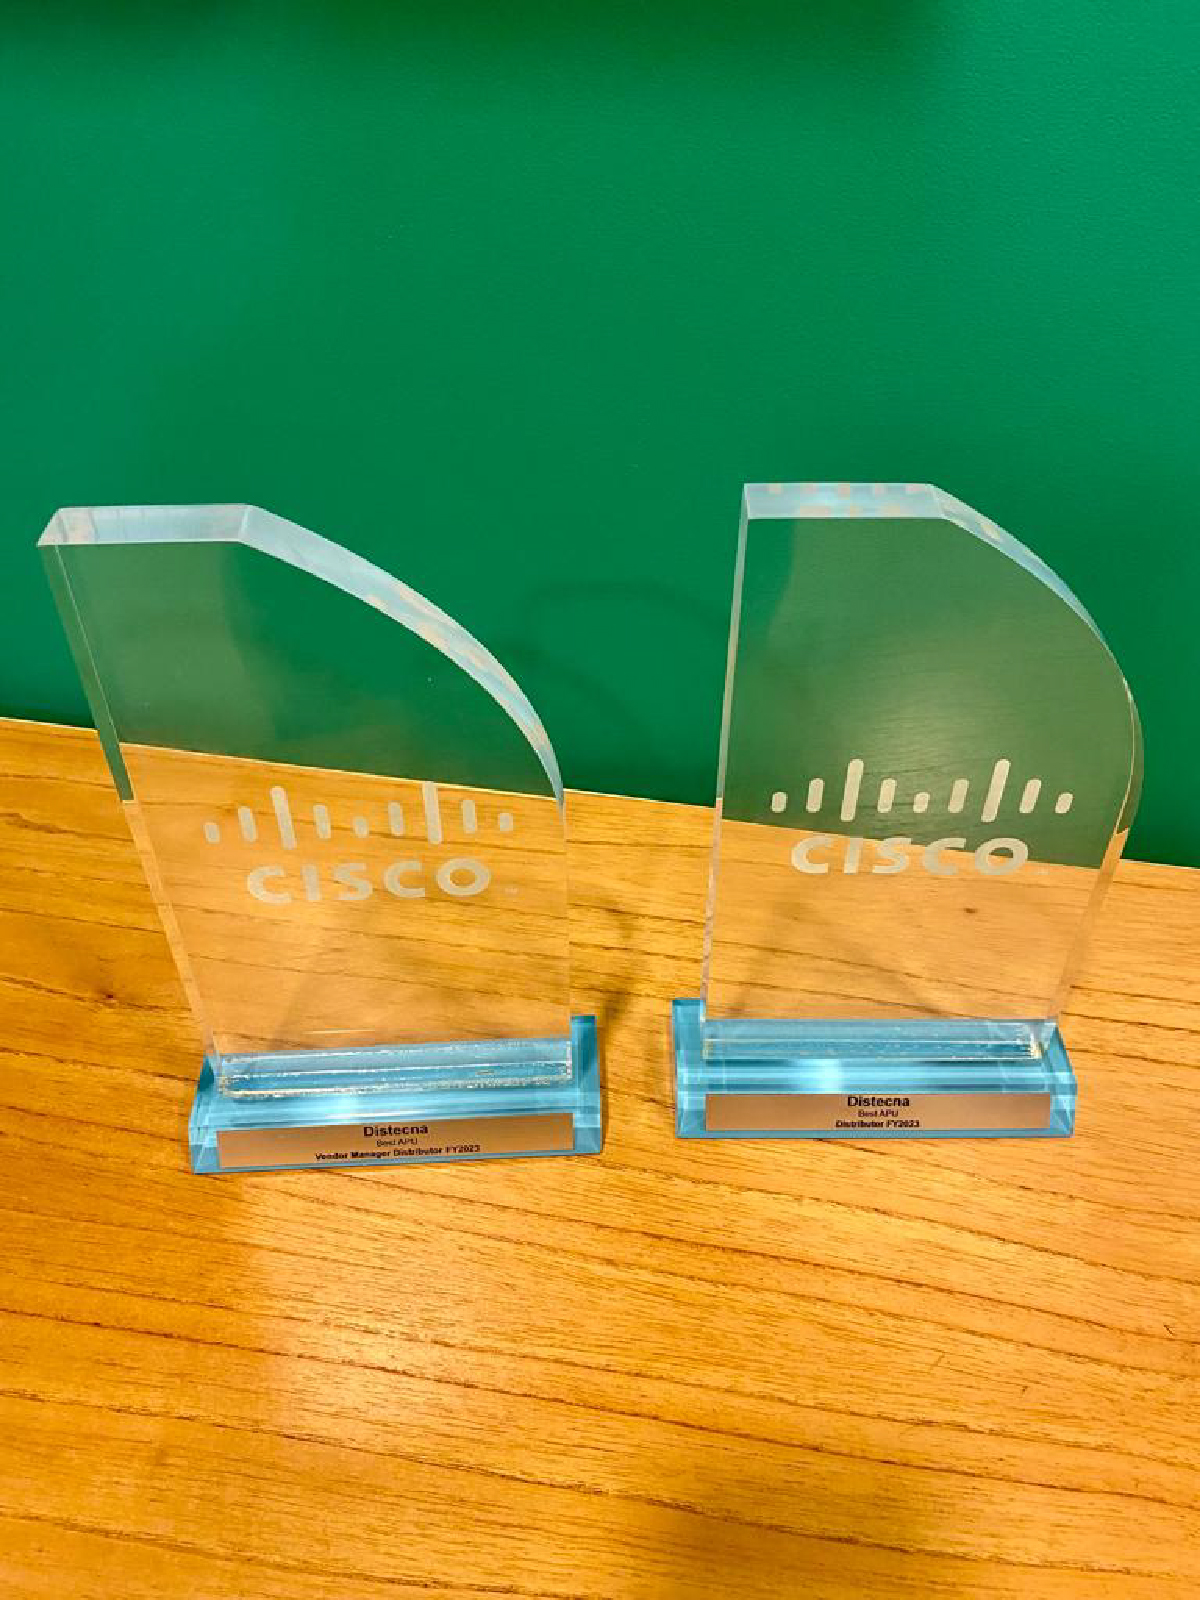 Distecna fue premiado como el mejor distribuidor de Cisco